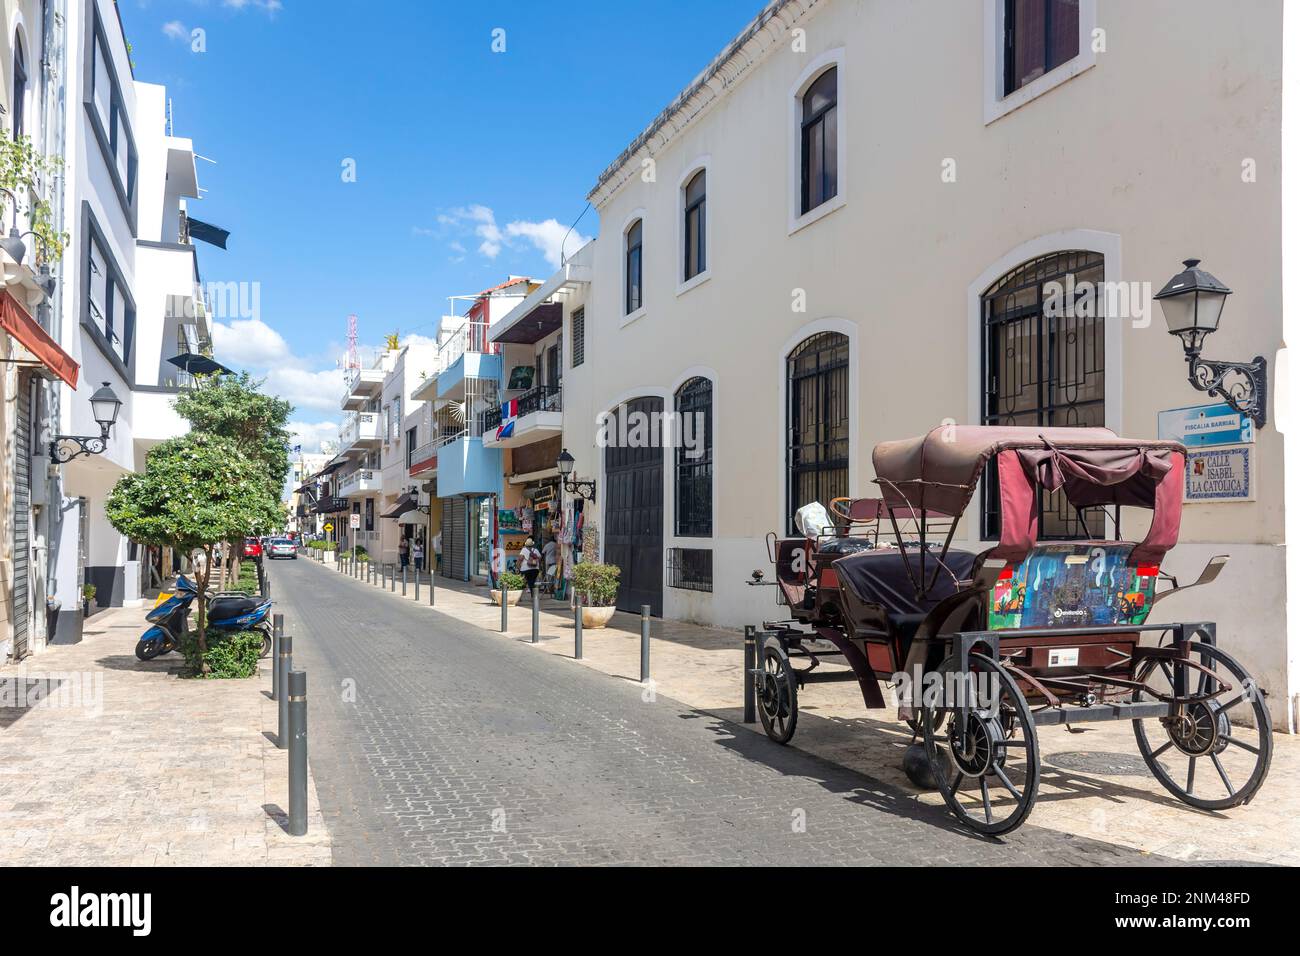 Rue et calèche dans la vieille ville, Calle Isabel la Catolica, Saint-Domingue, République dominicaine, grandes Antilles, Caraïbes Banque D'Images